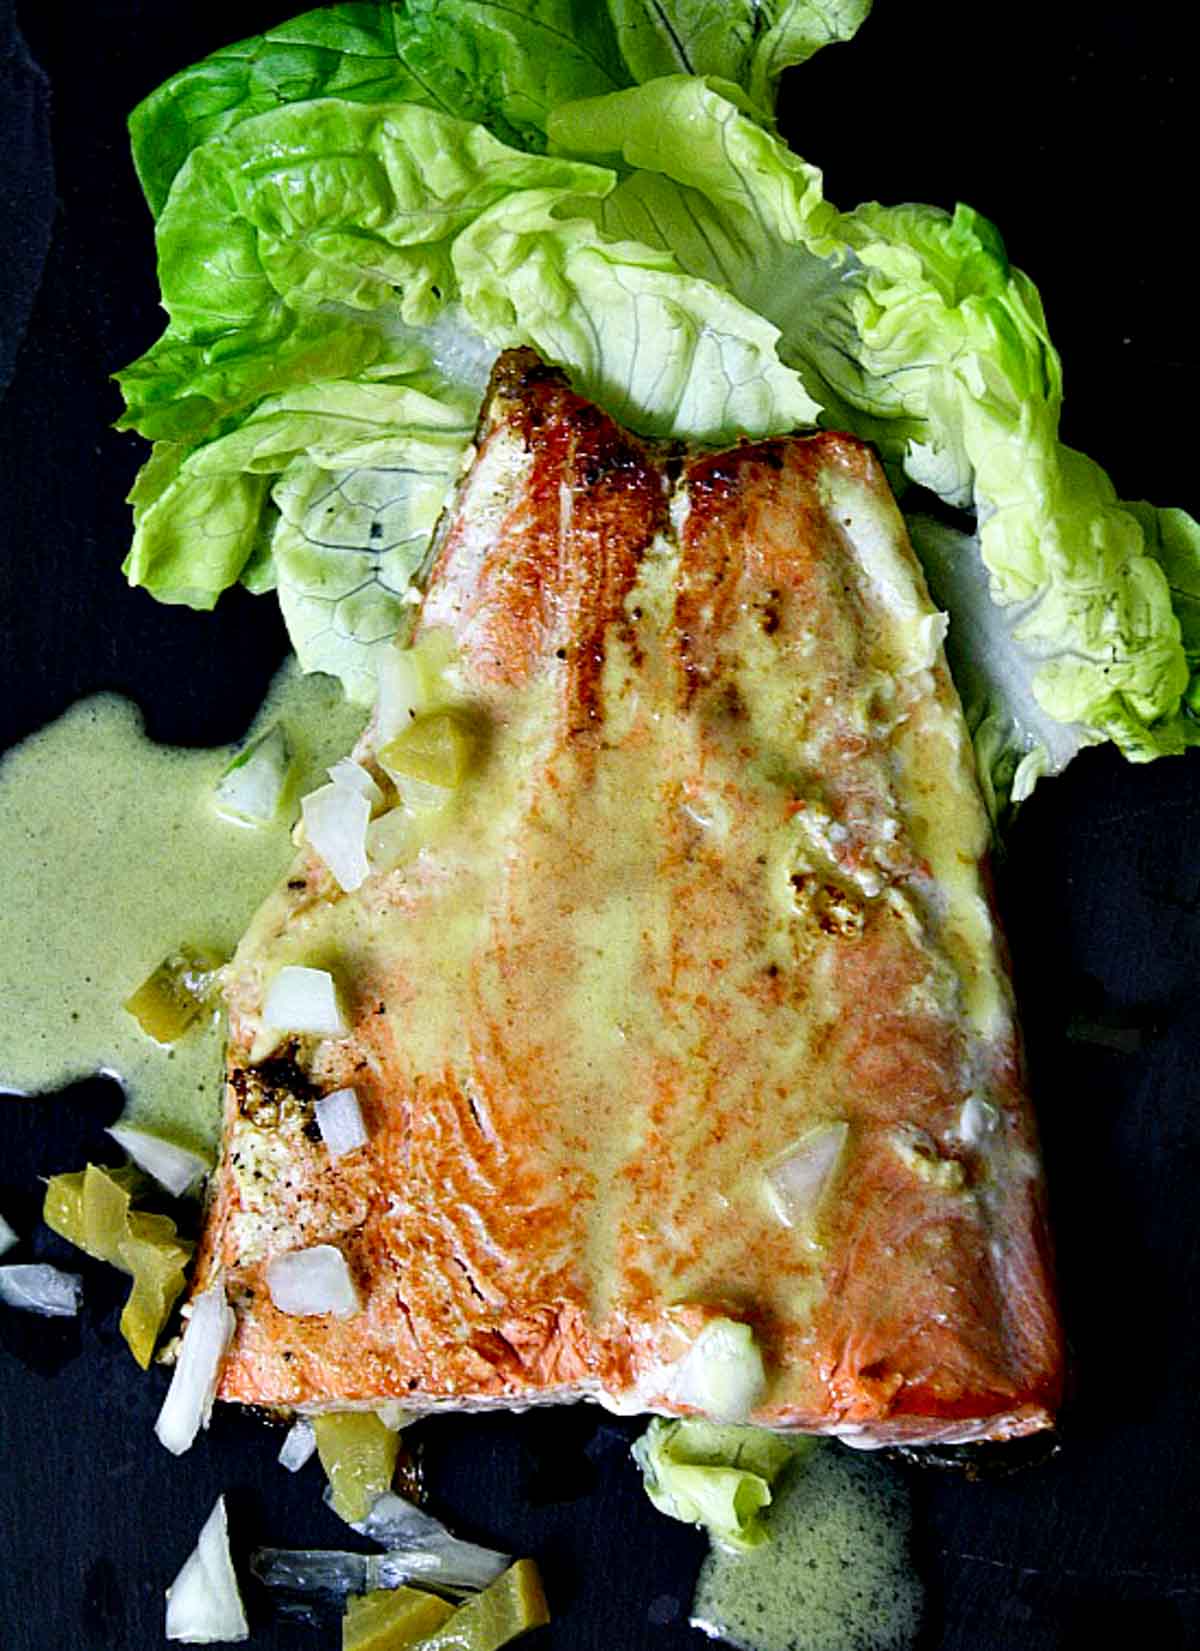 Salmon with preserved lemon vinaigrette.